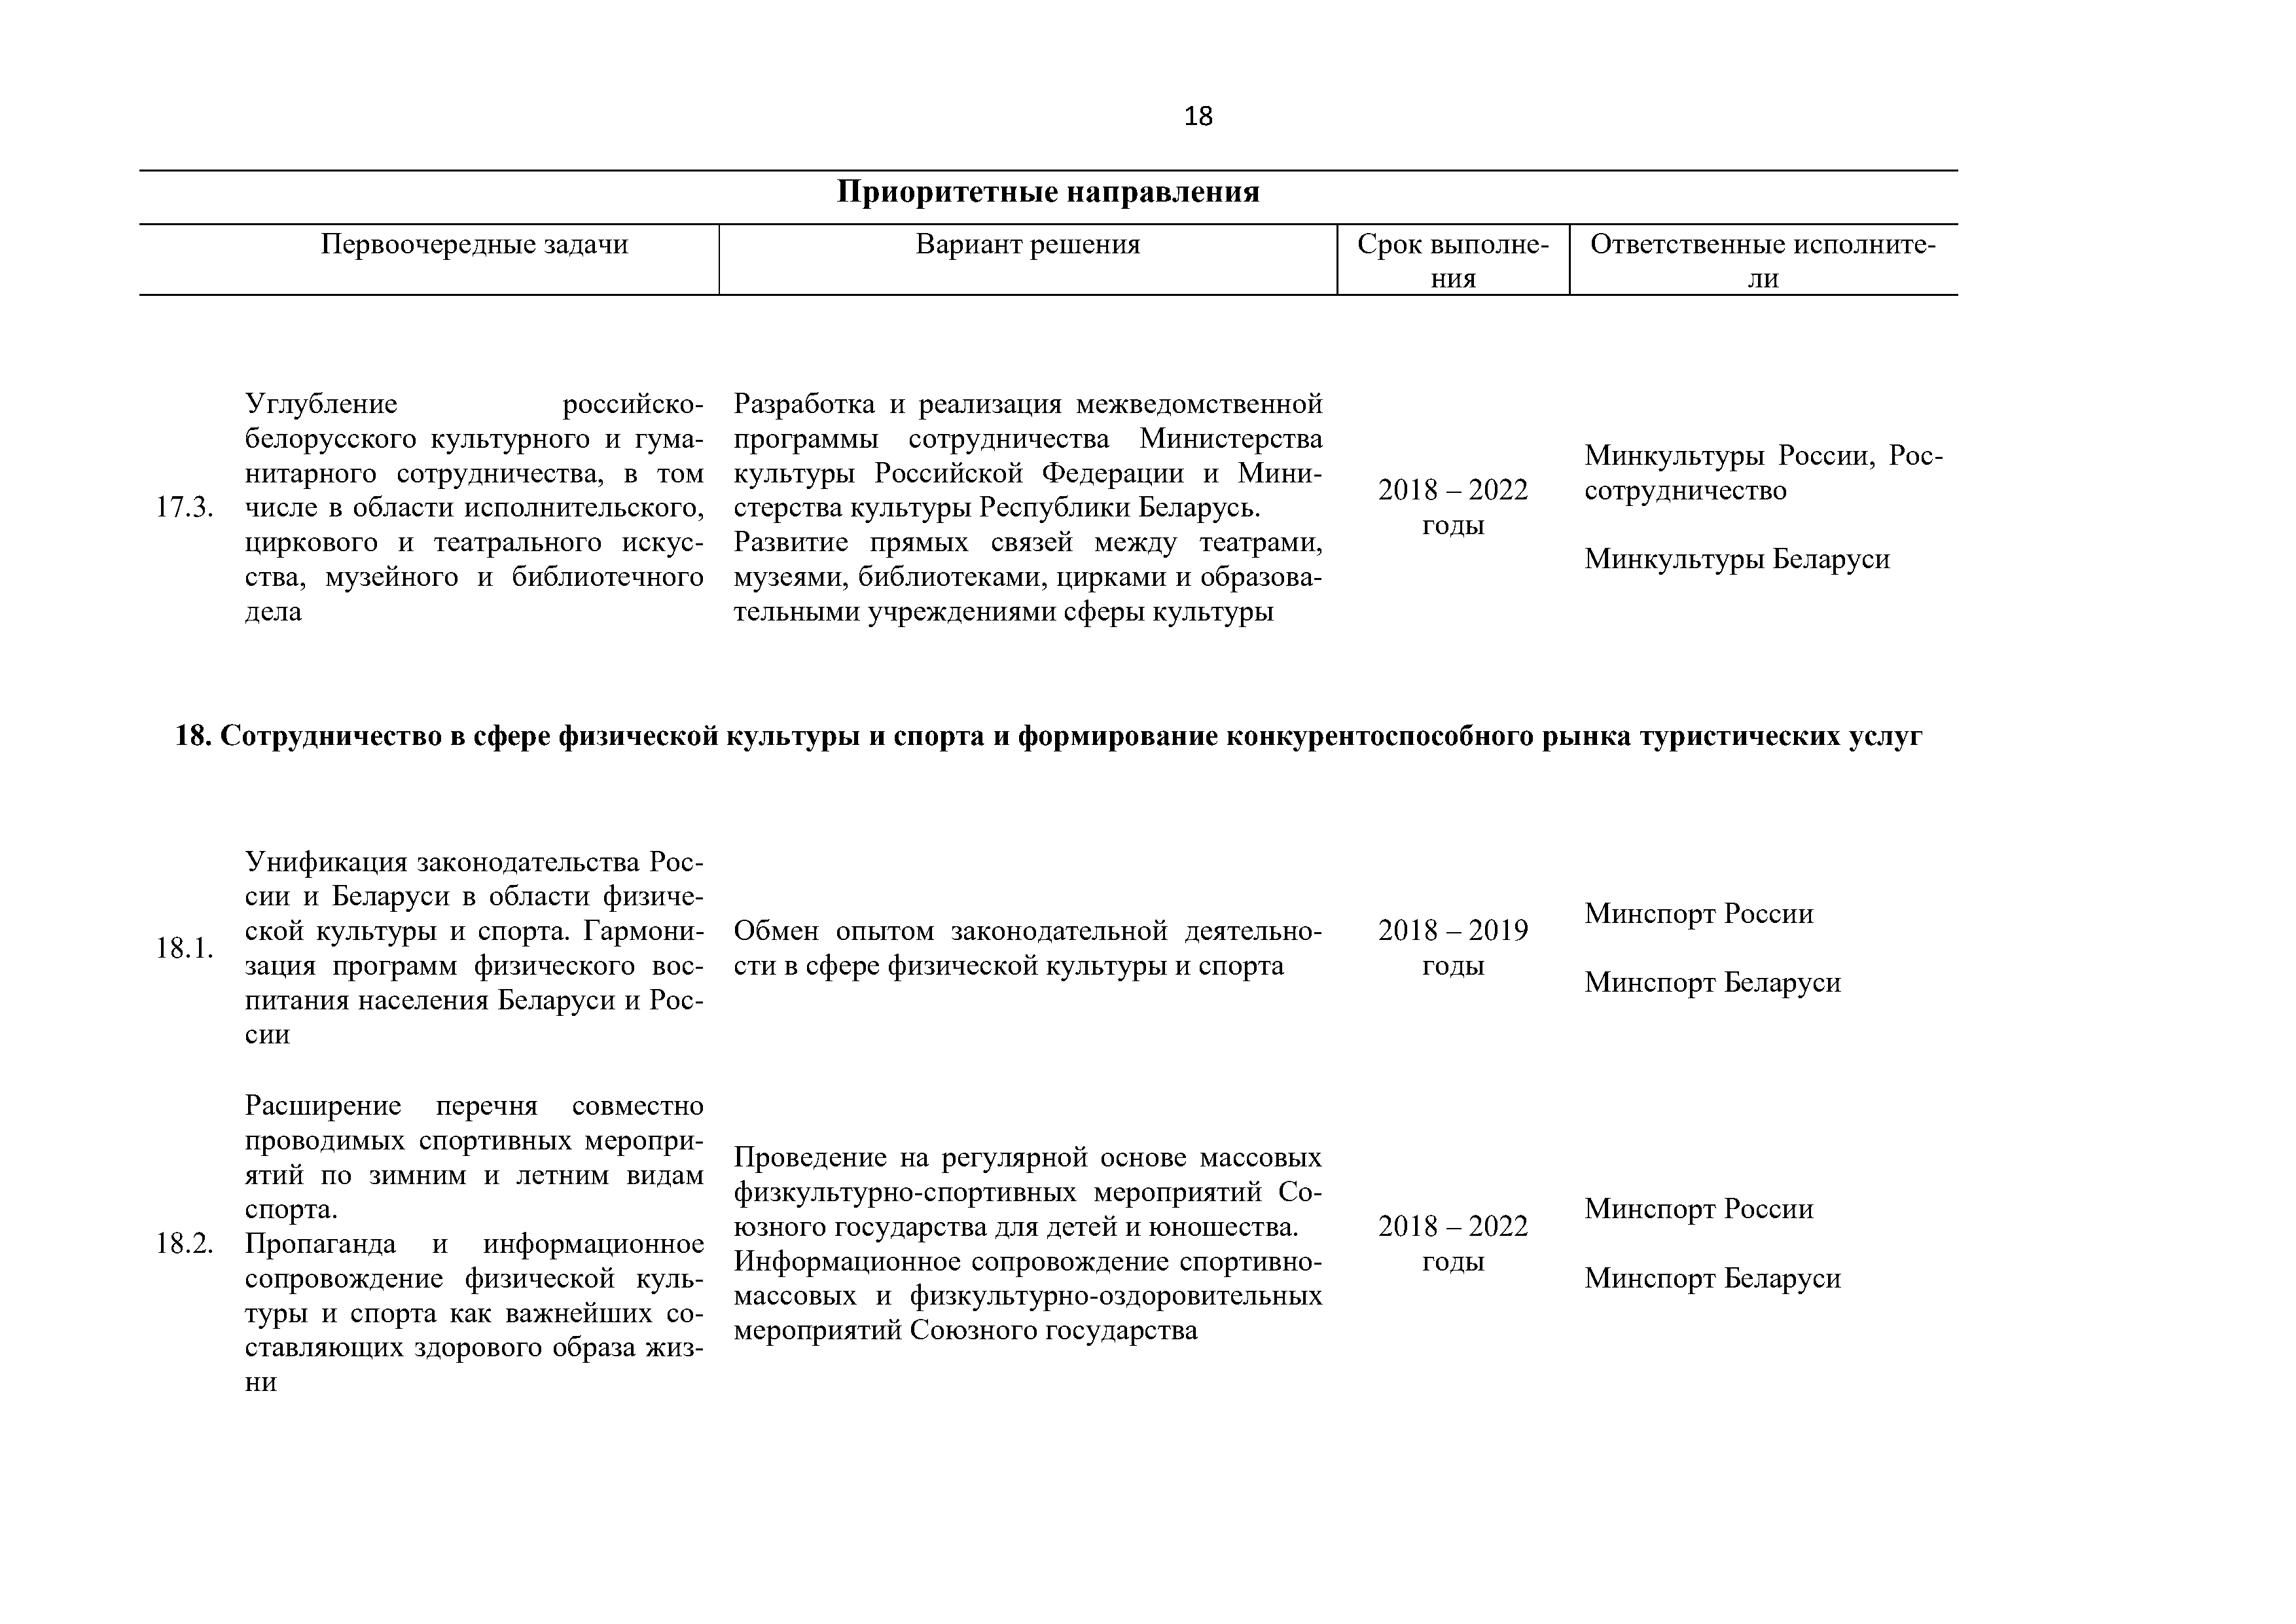 Приоритетные направления и первоочередные задачи развития Союзного государства на 2018 – 2022 г. (Страница 18)